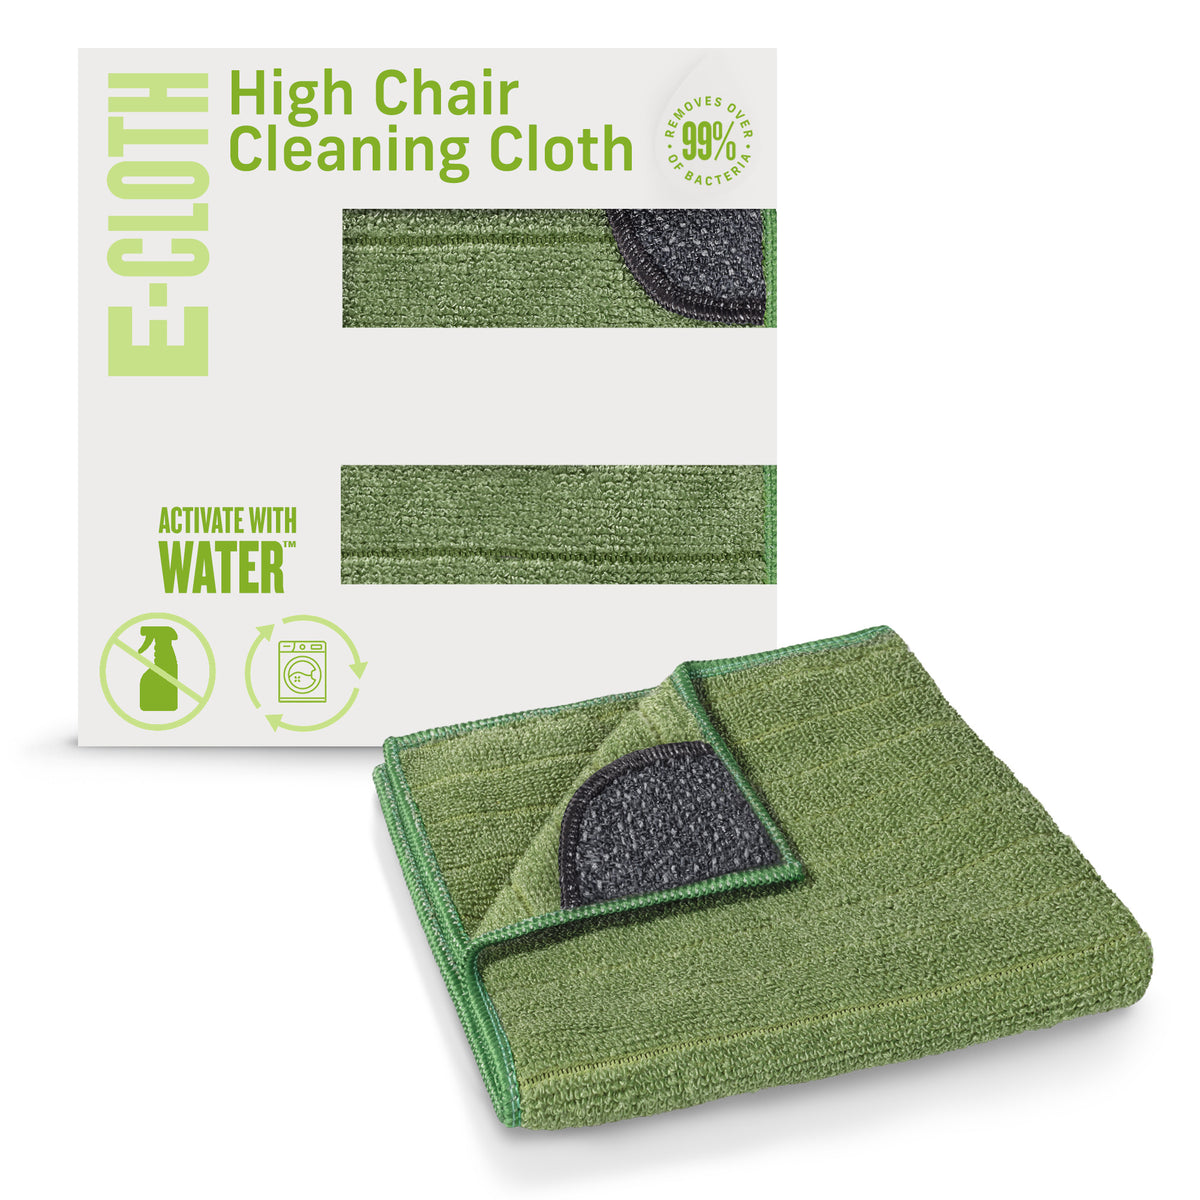 High Chair Cloth